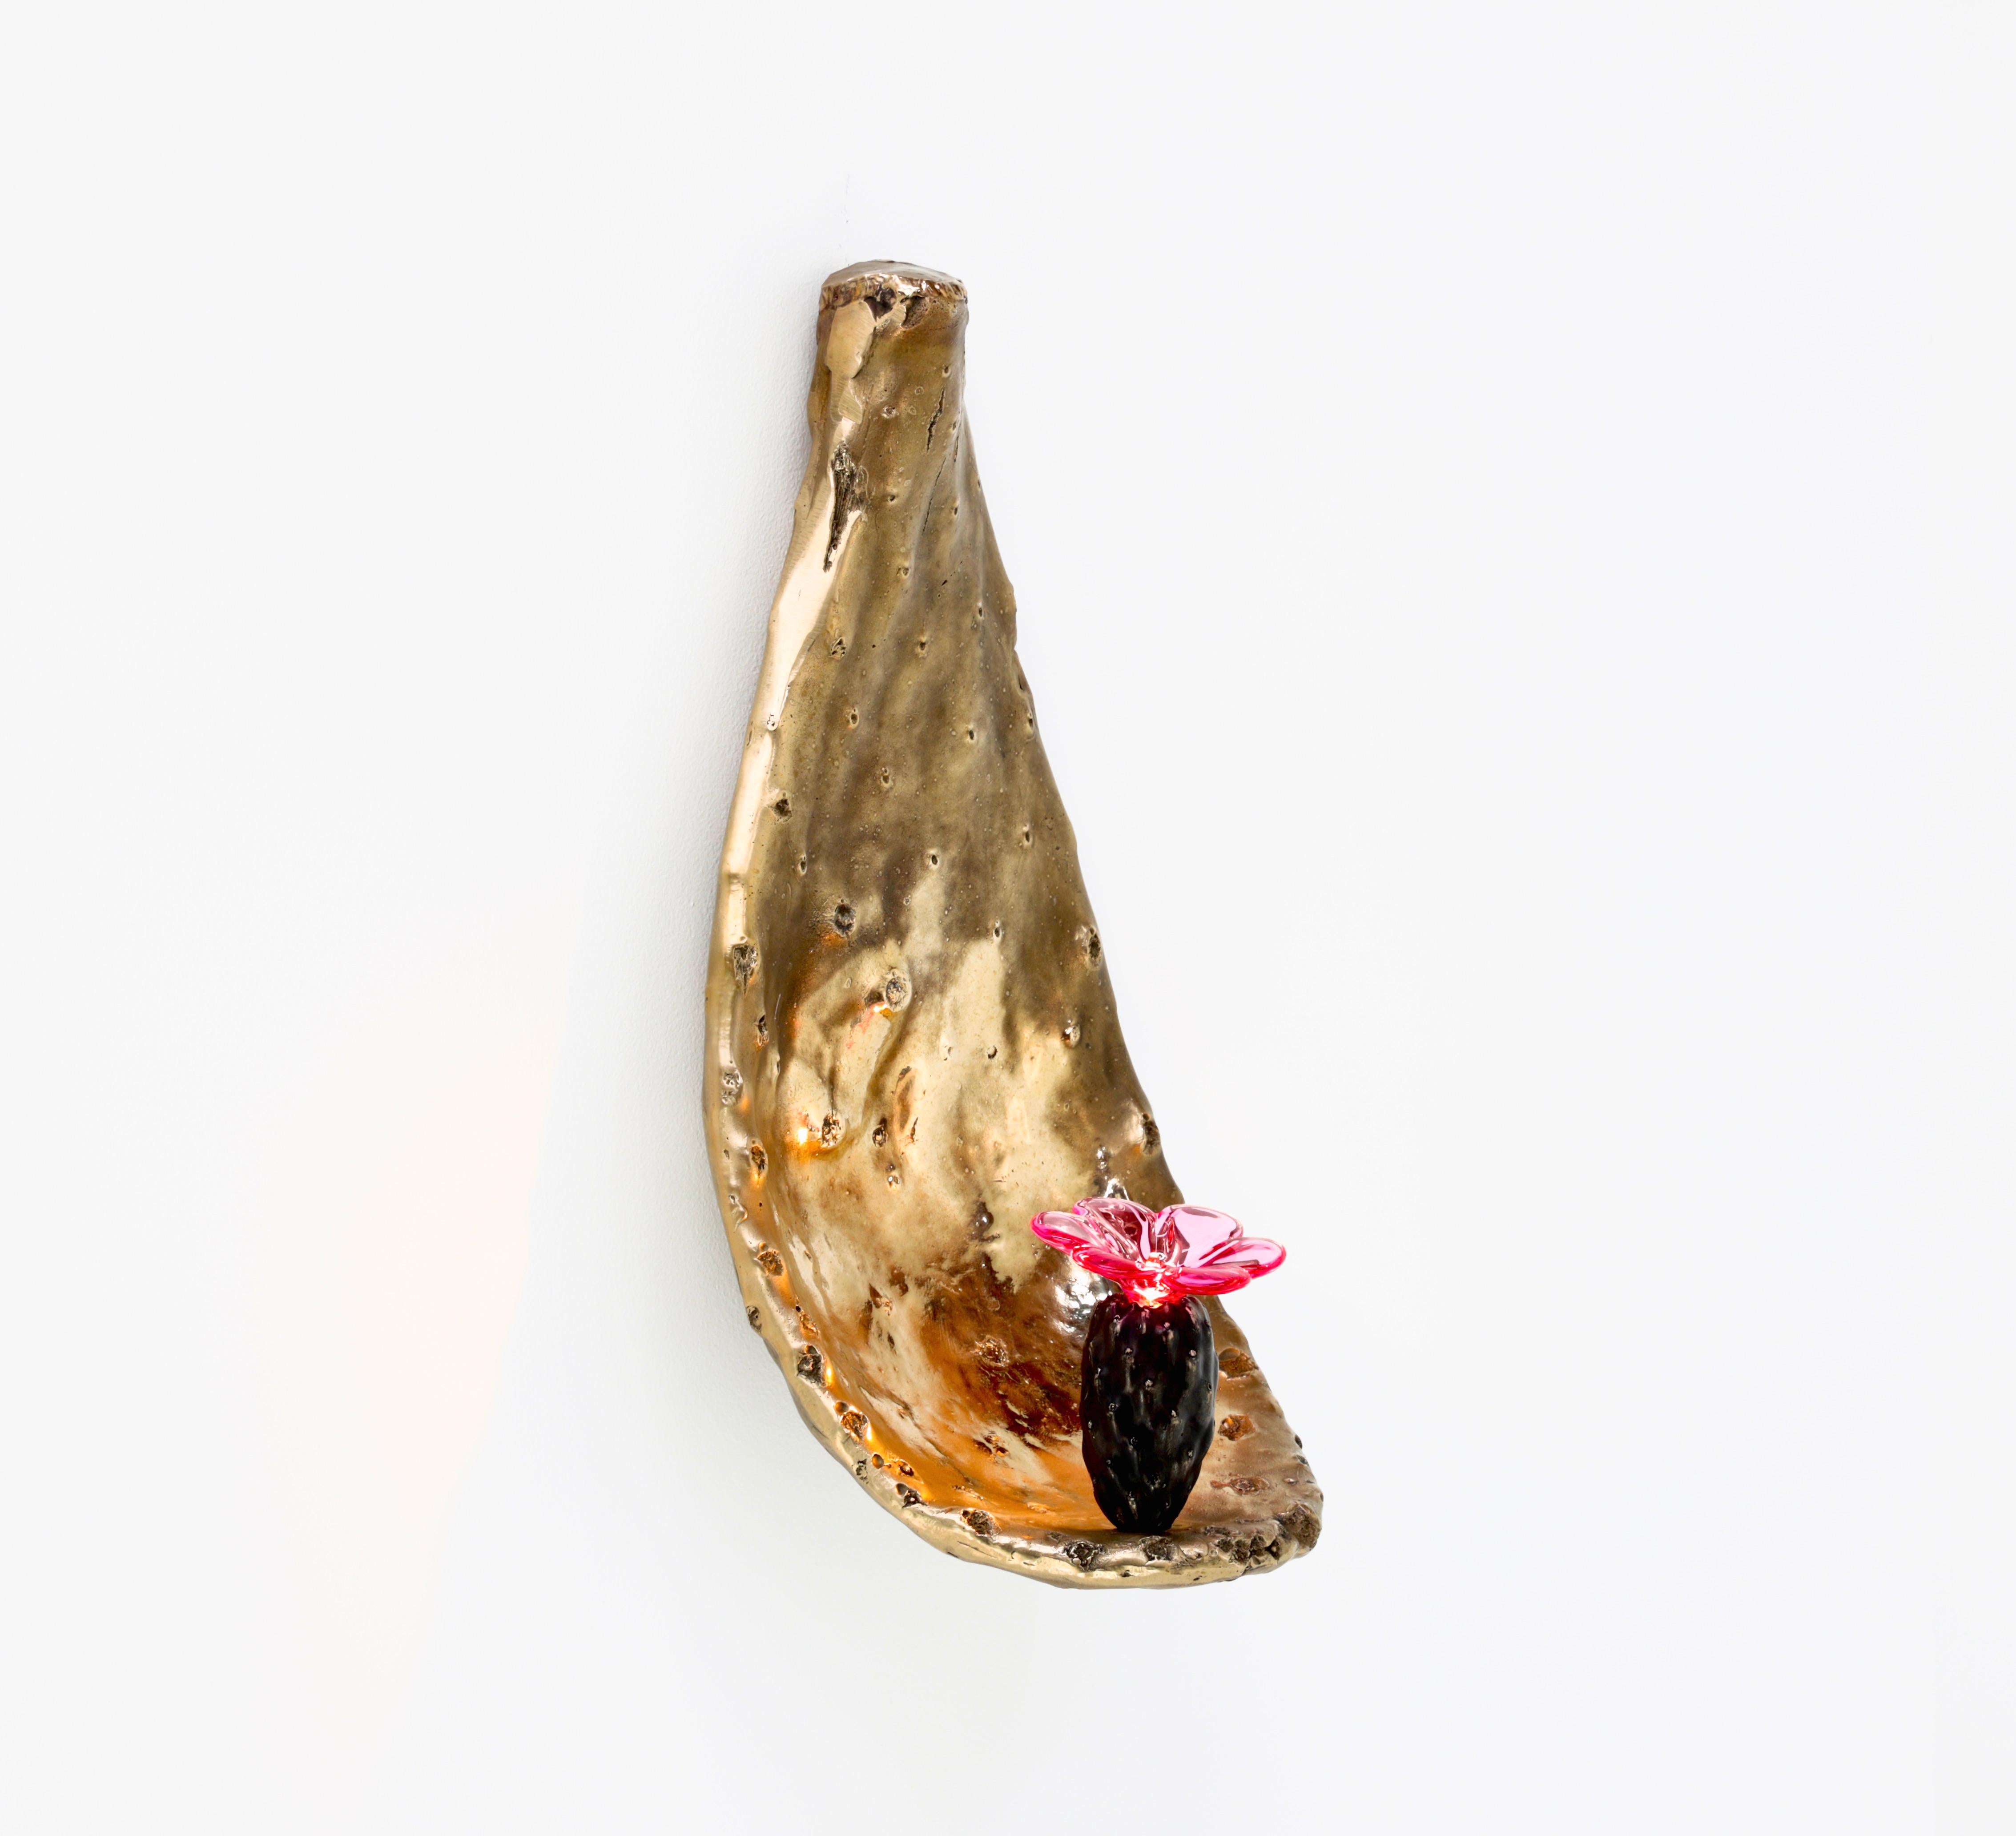 L'applique Nopal est en bronze moulé et détaillée individuellement, ce qui la rend unique en son genre.
Le corps est en bronze brut et la paume intérieure est hautement polie pour refléter la lumière, le fruit est patiné et surmonté d'une fleur en